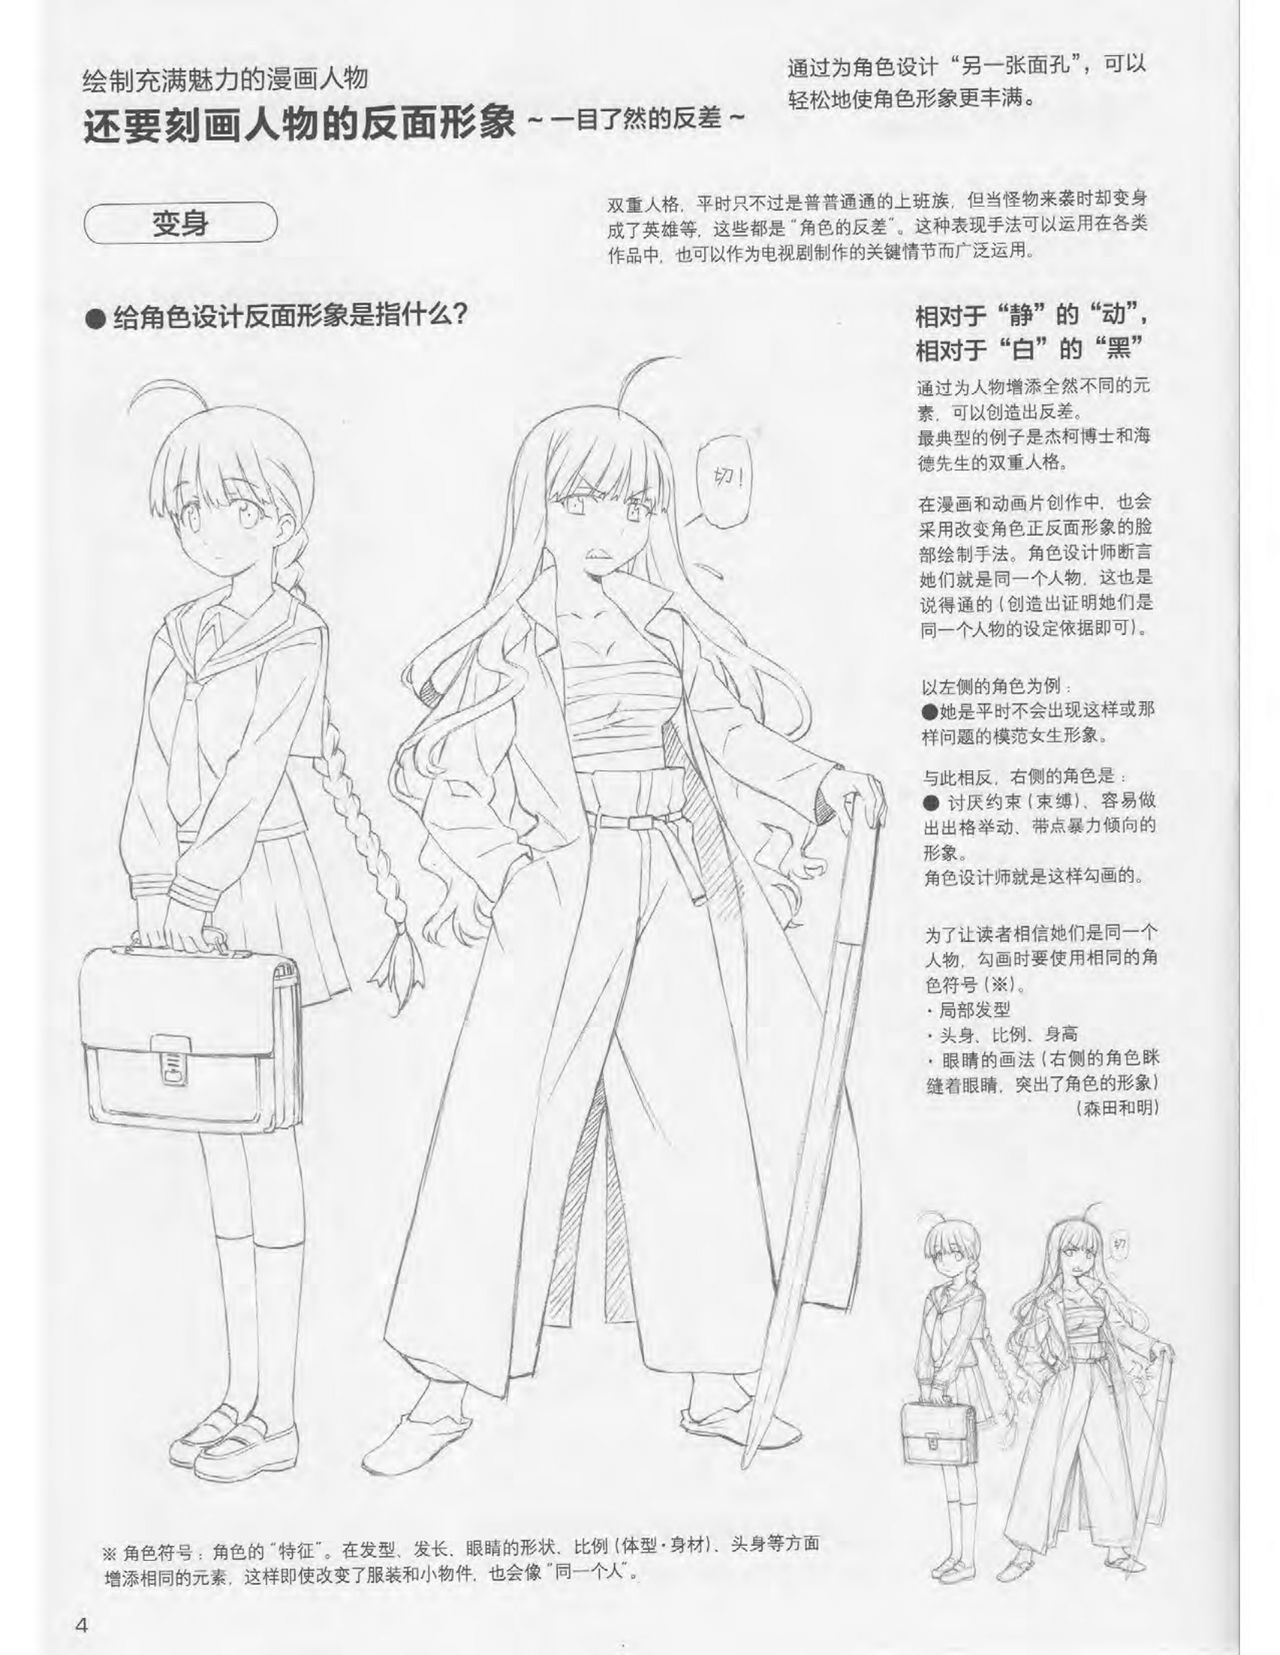 Japanese Manga Master Lecture 3: Lin Akira and Kakumaru Maru Talk About Glamorous Character Modeling 4